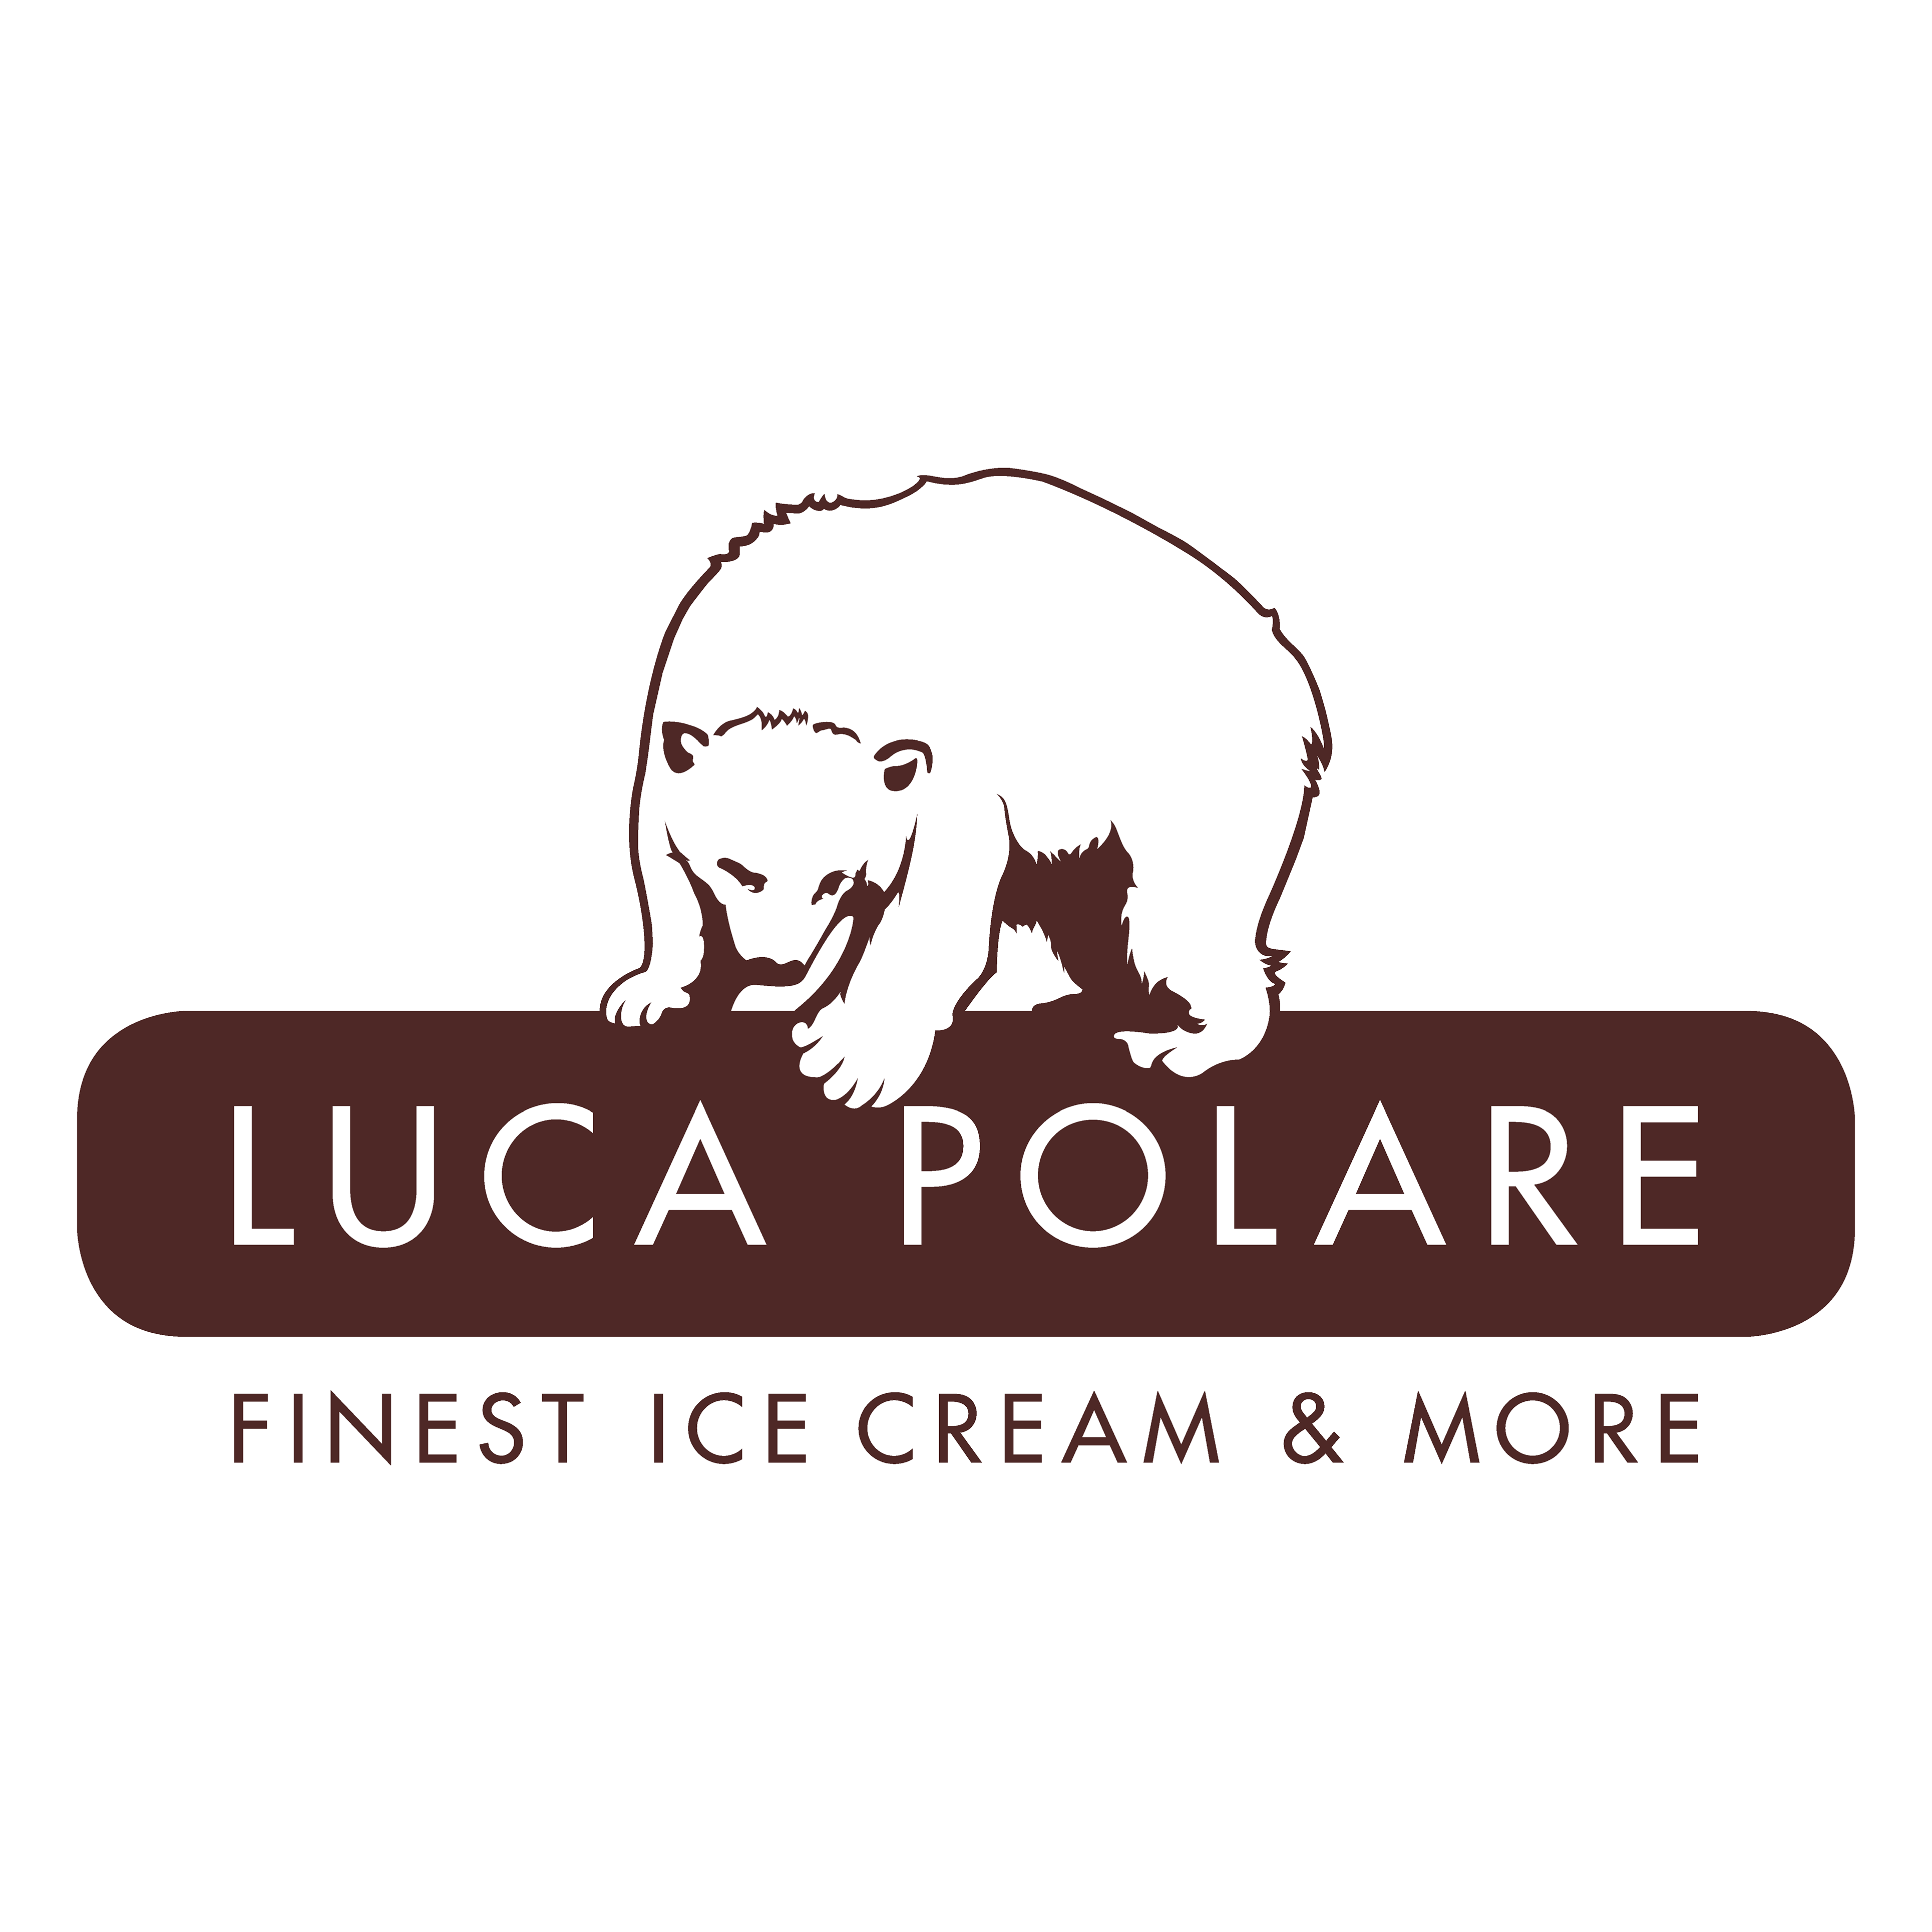 Luca polare